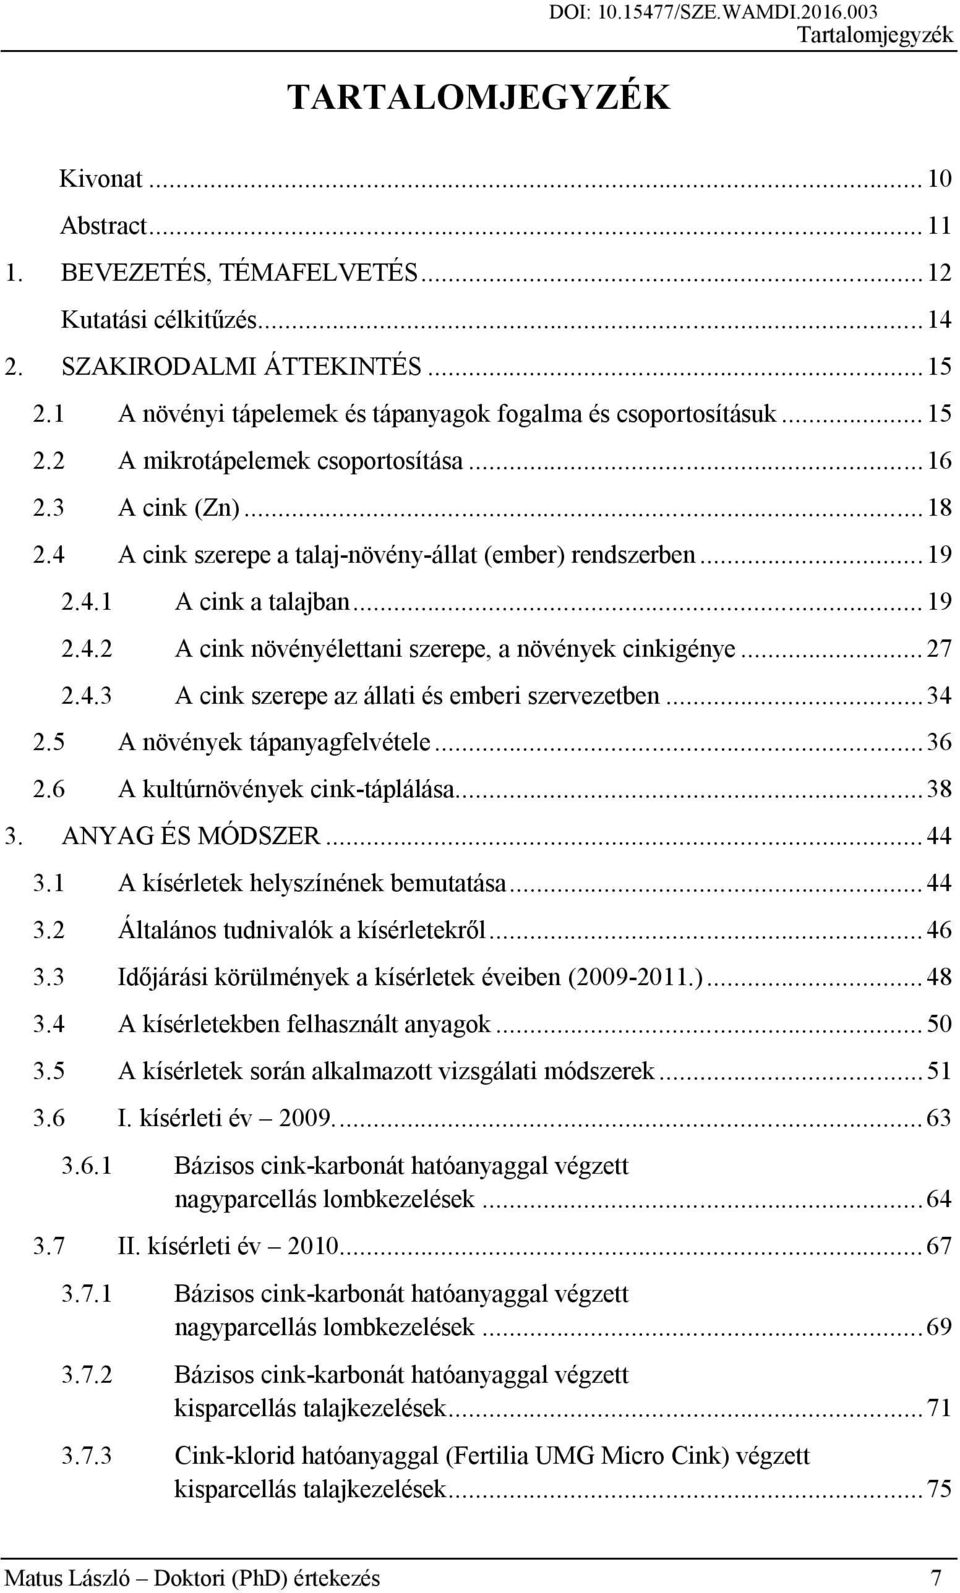 DOKTORI (PhD) ÉRTEKEZÉS - PDF Ingyenes letöltés